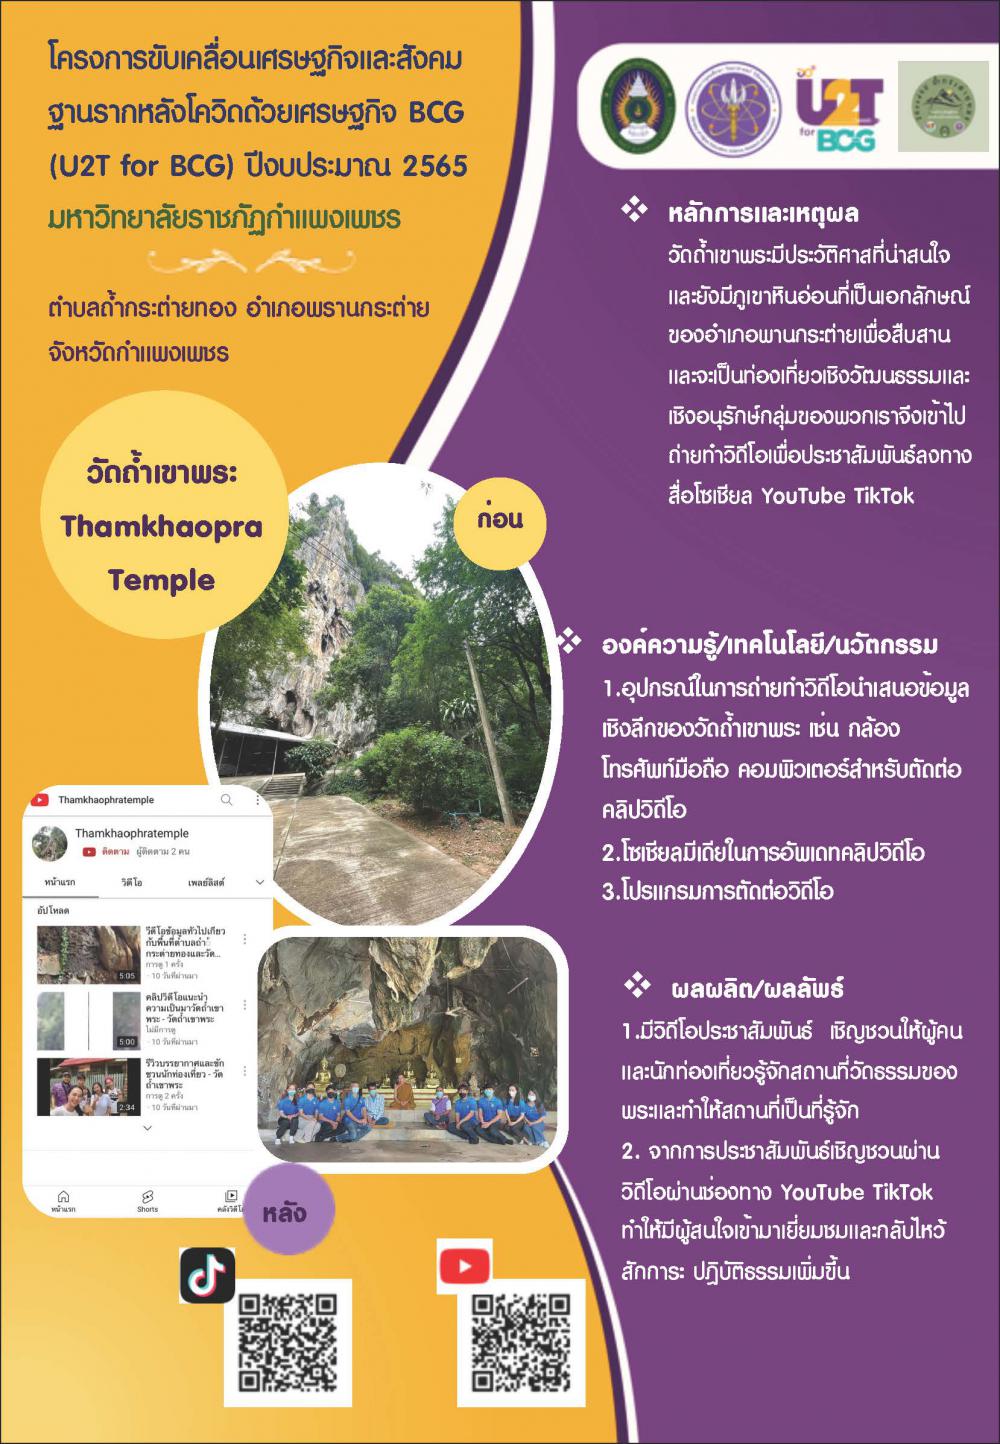 U2T for BCG-ตำบลถ้ำกระต่ายทอง-วัดถ้ำเขาพระ Tham khao phra temple